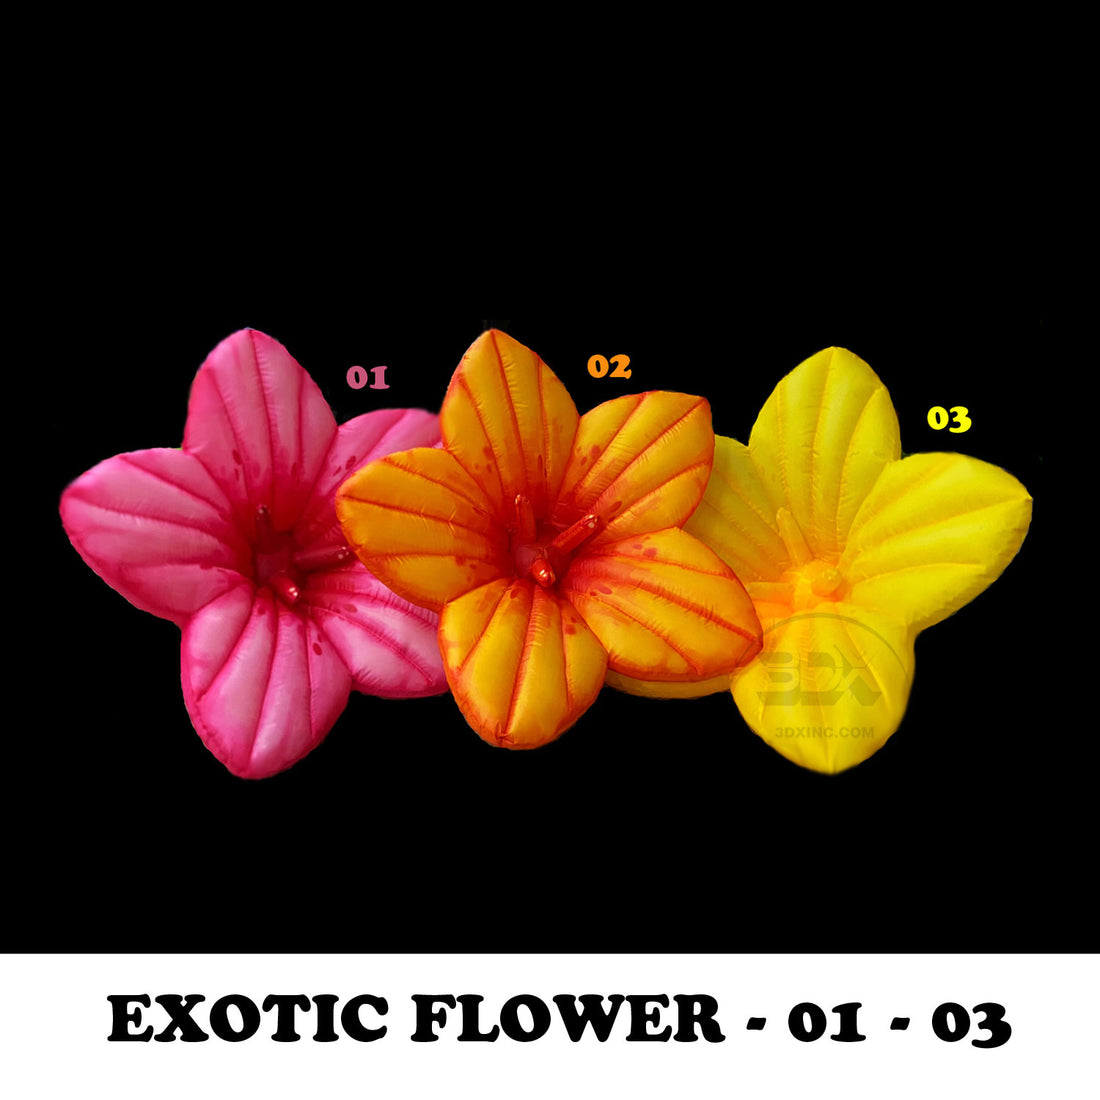 EXOTIC FLOWER - 01 - 03